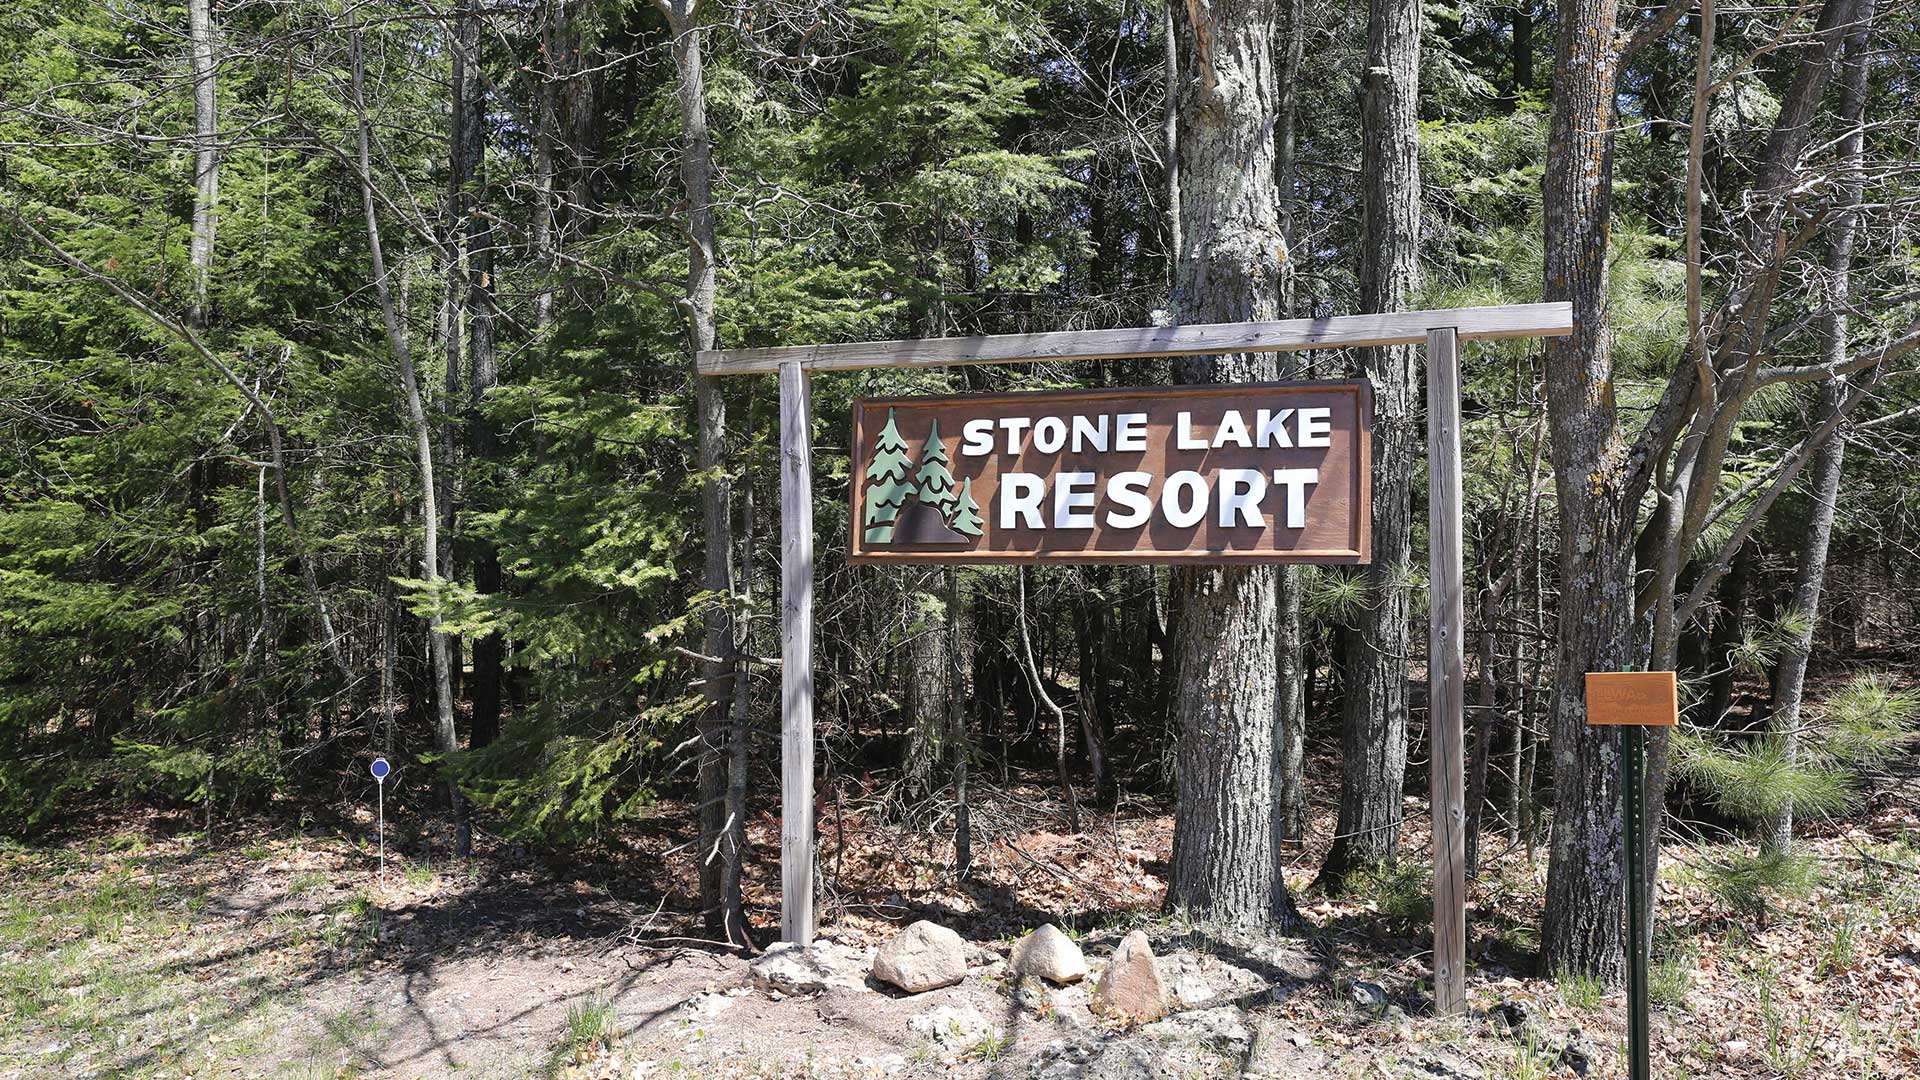 Stone Lake Resort sign